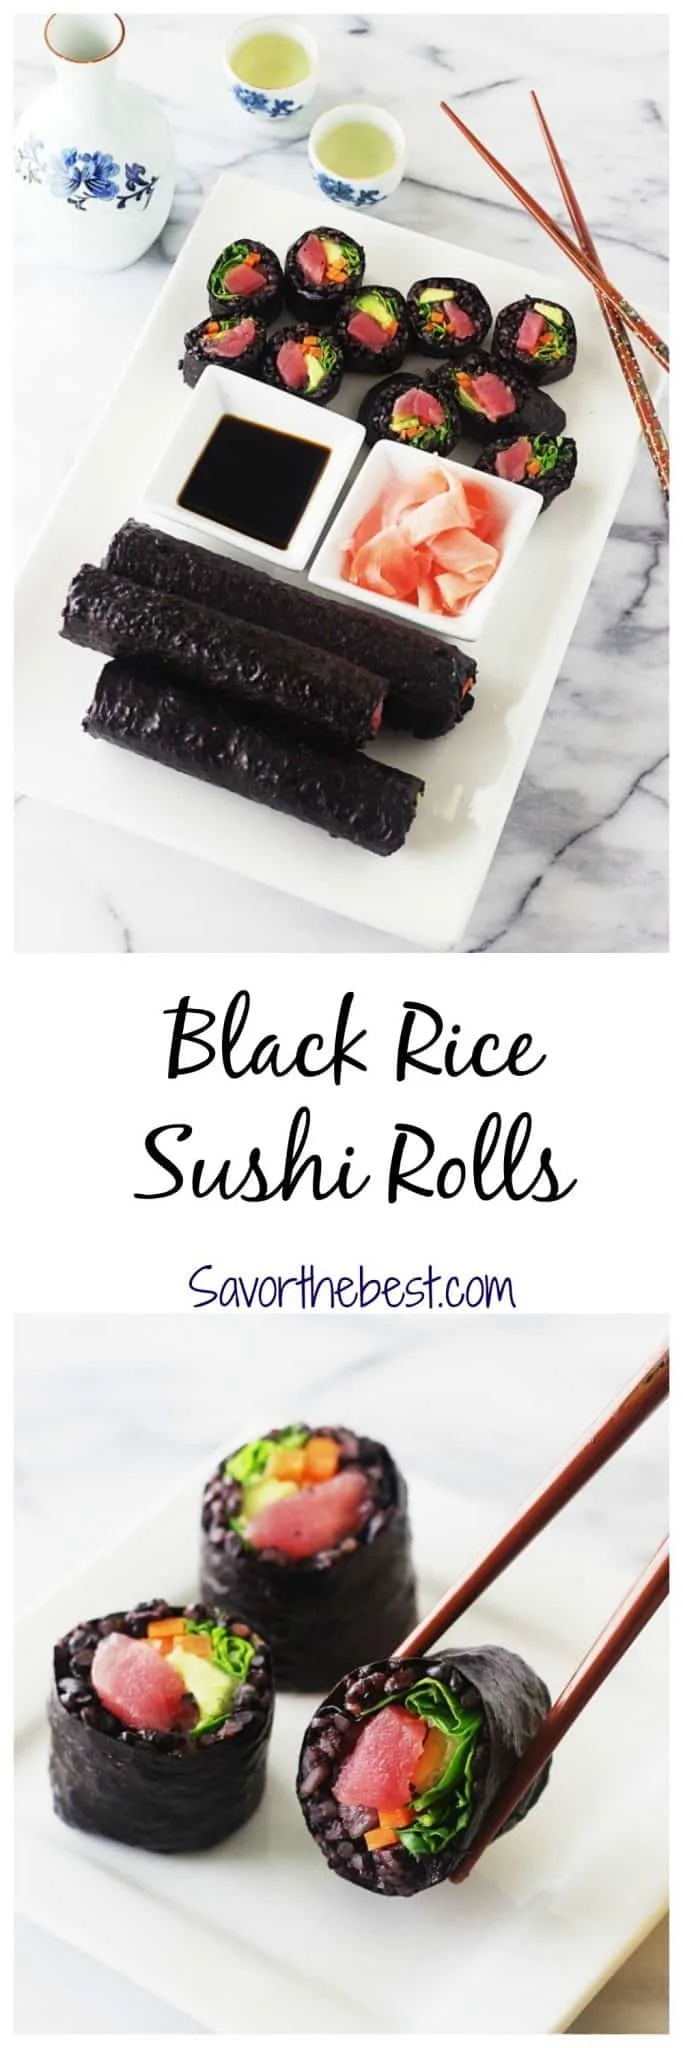 Black Rice Sushi Rolls